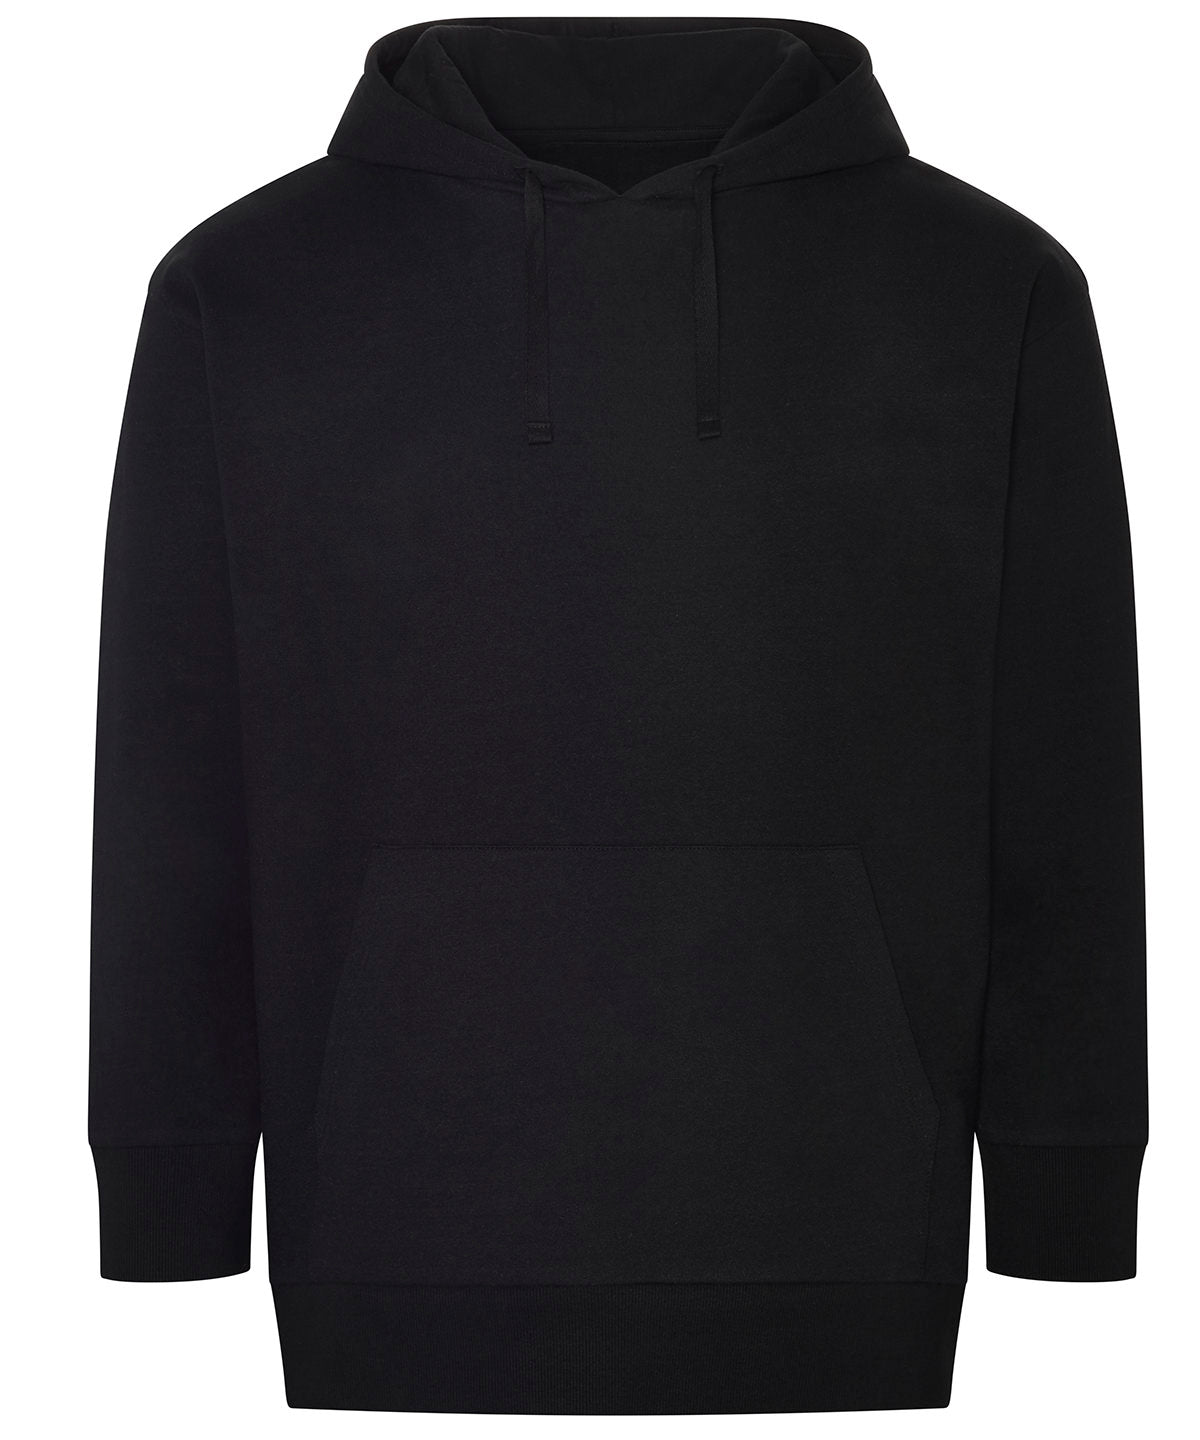 Personalised Hoodies - Black AWDis Ecologie Crater recycled hoodie